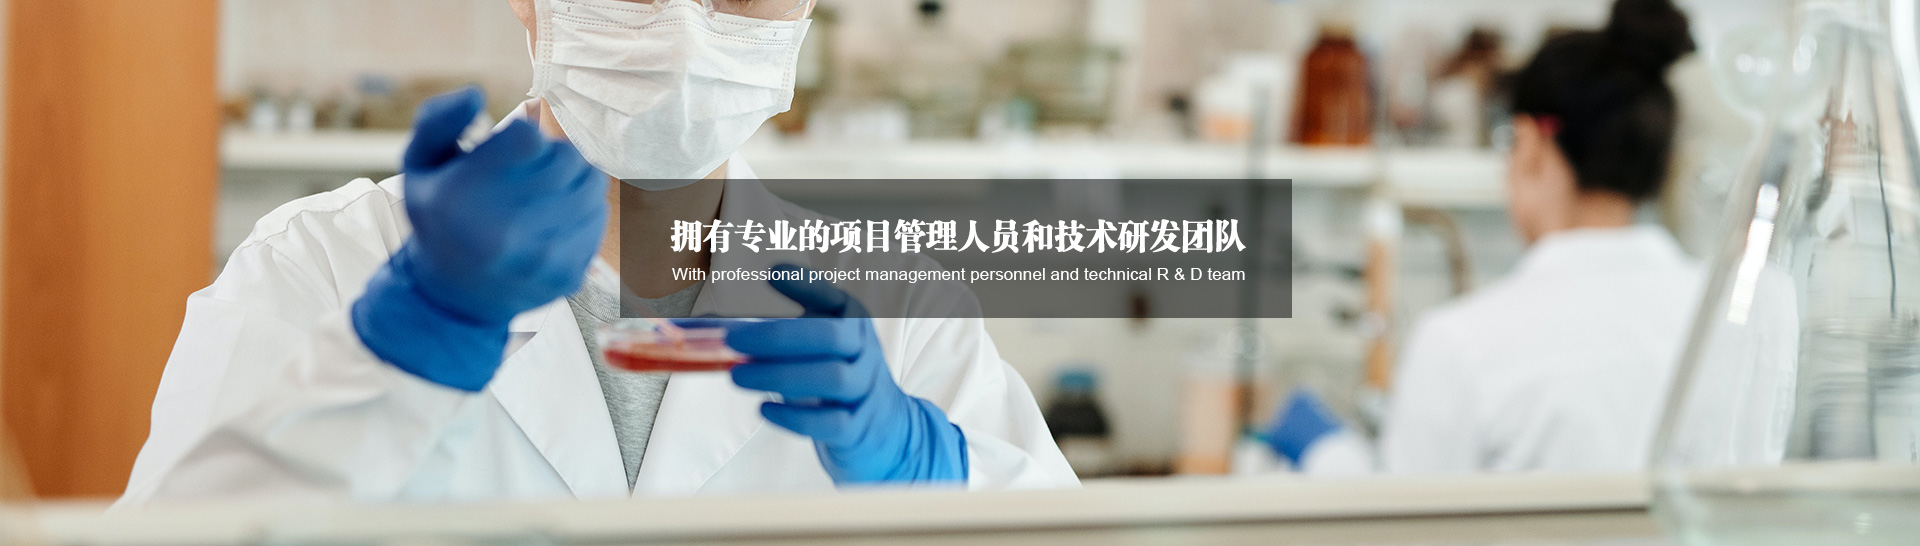 Xuzhou JianPing Chemical Co., Ltd.